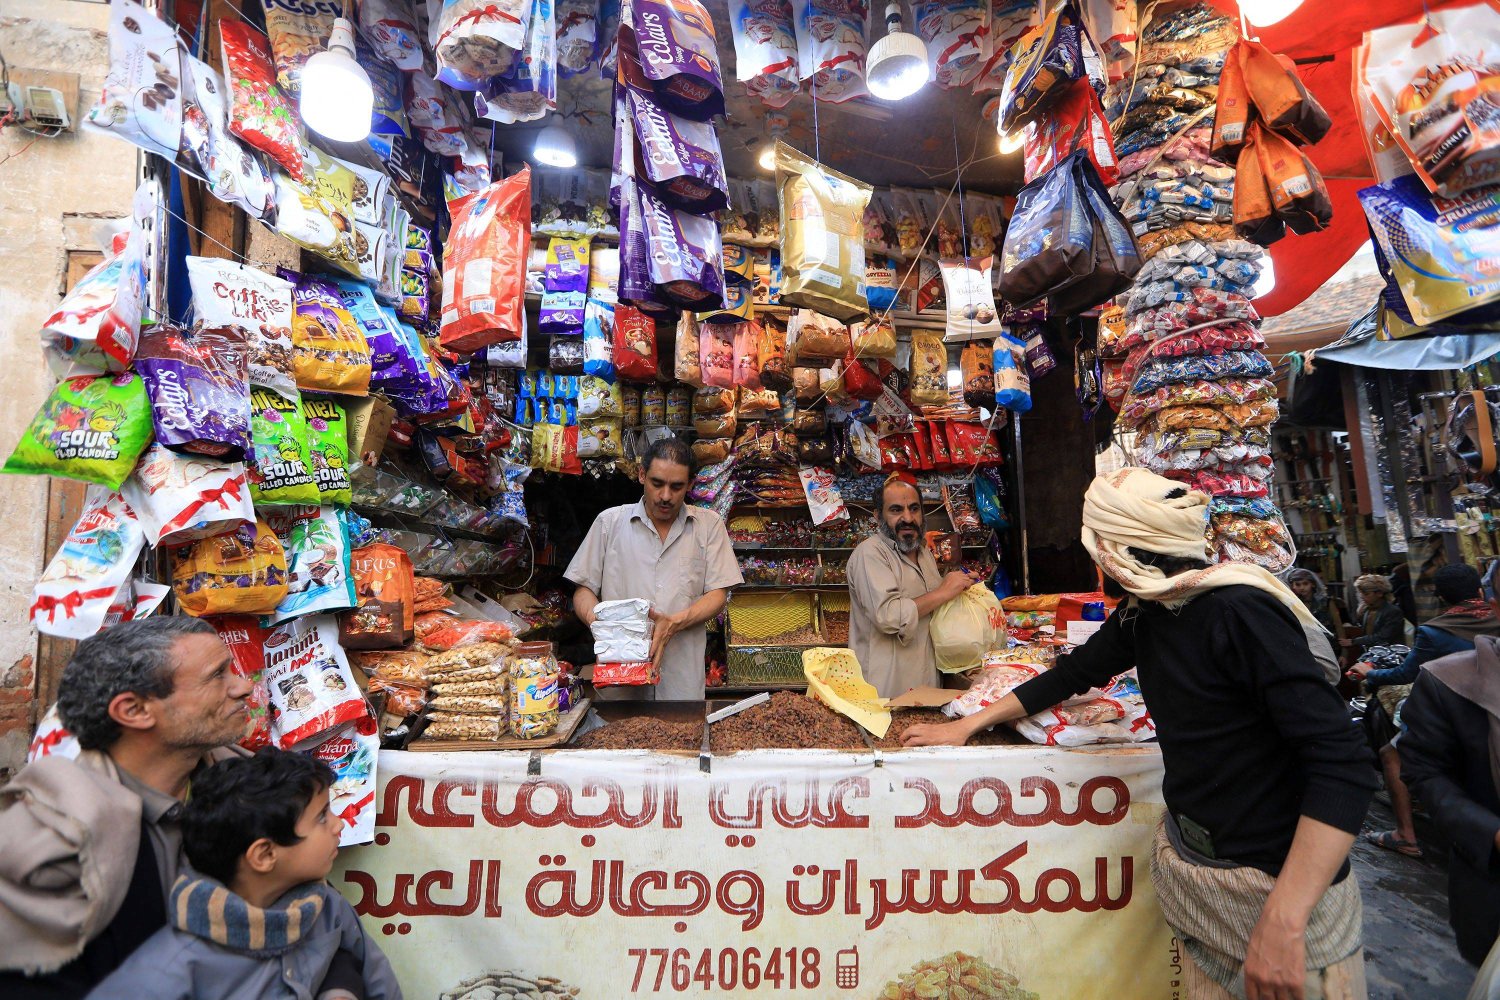 متجر في صنعاء لبيع المكسرات والحلويات (أ.ف.ب)